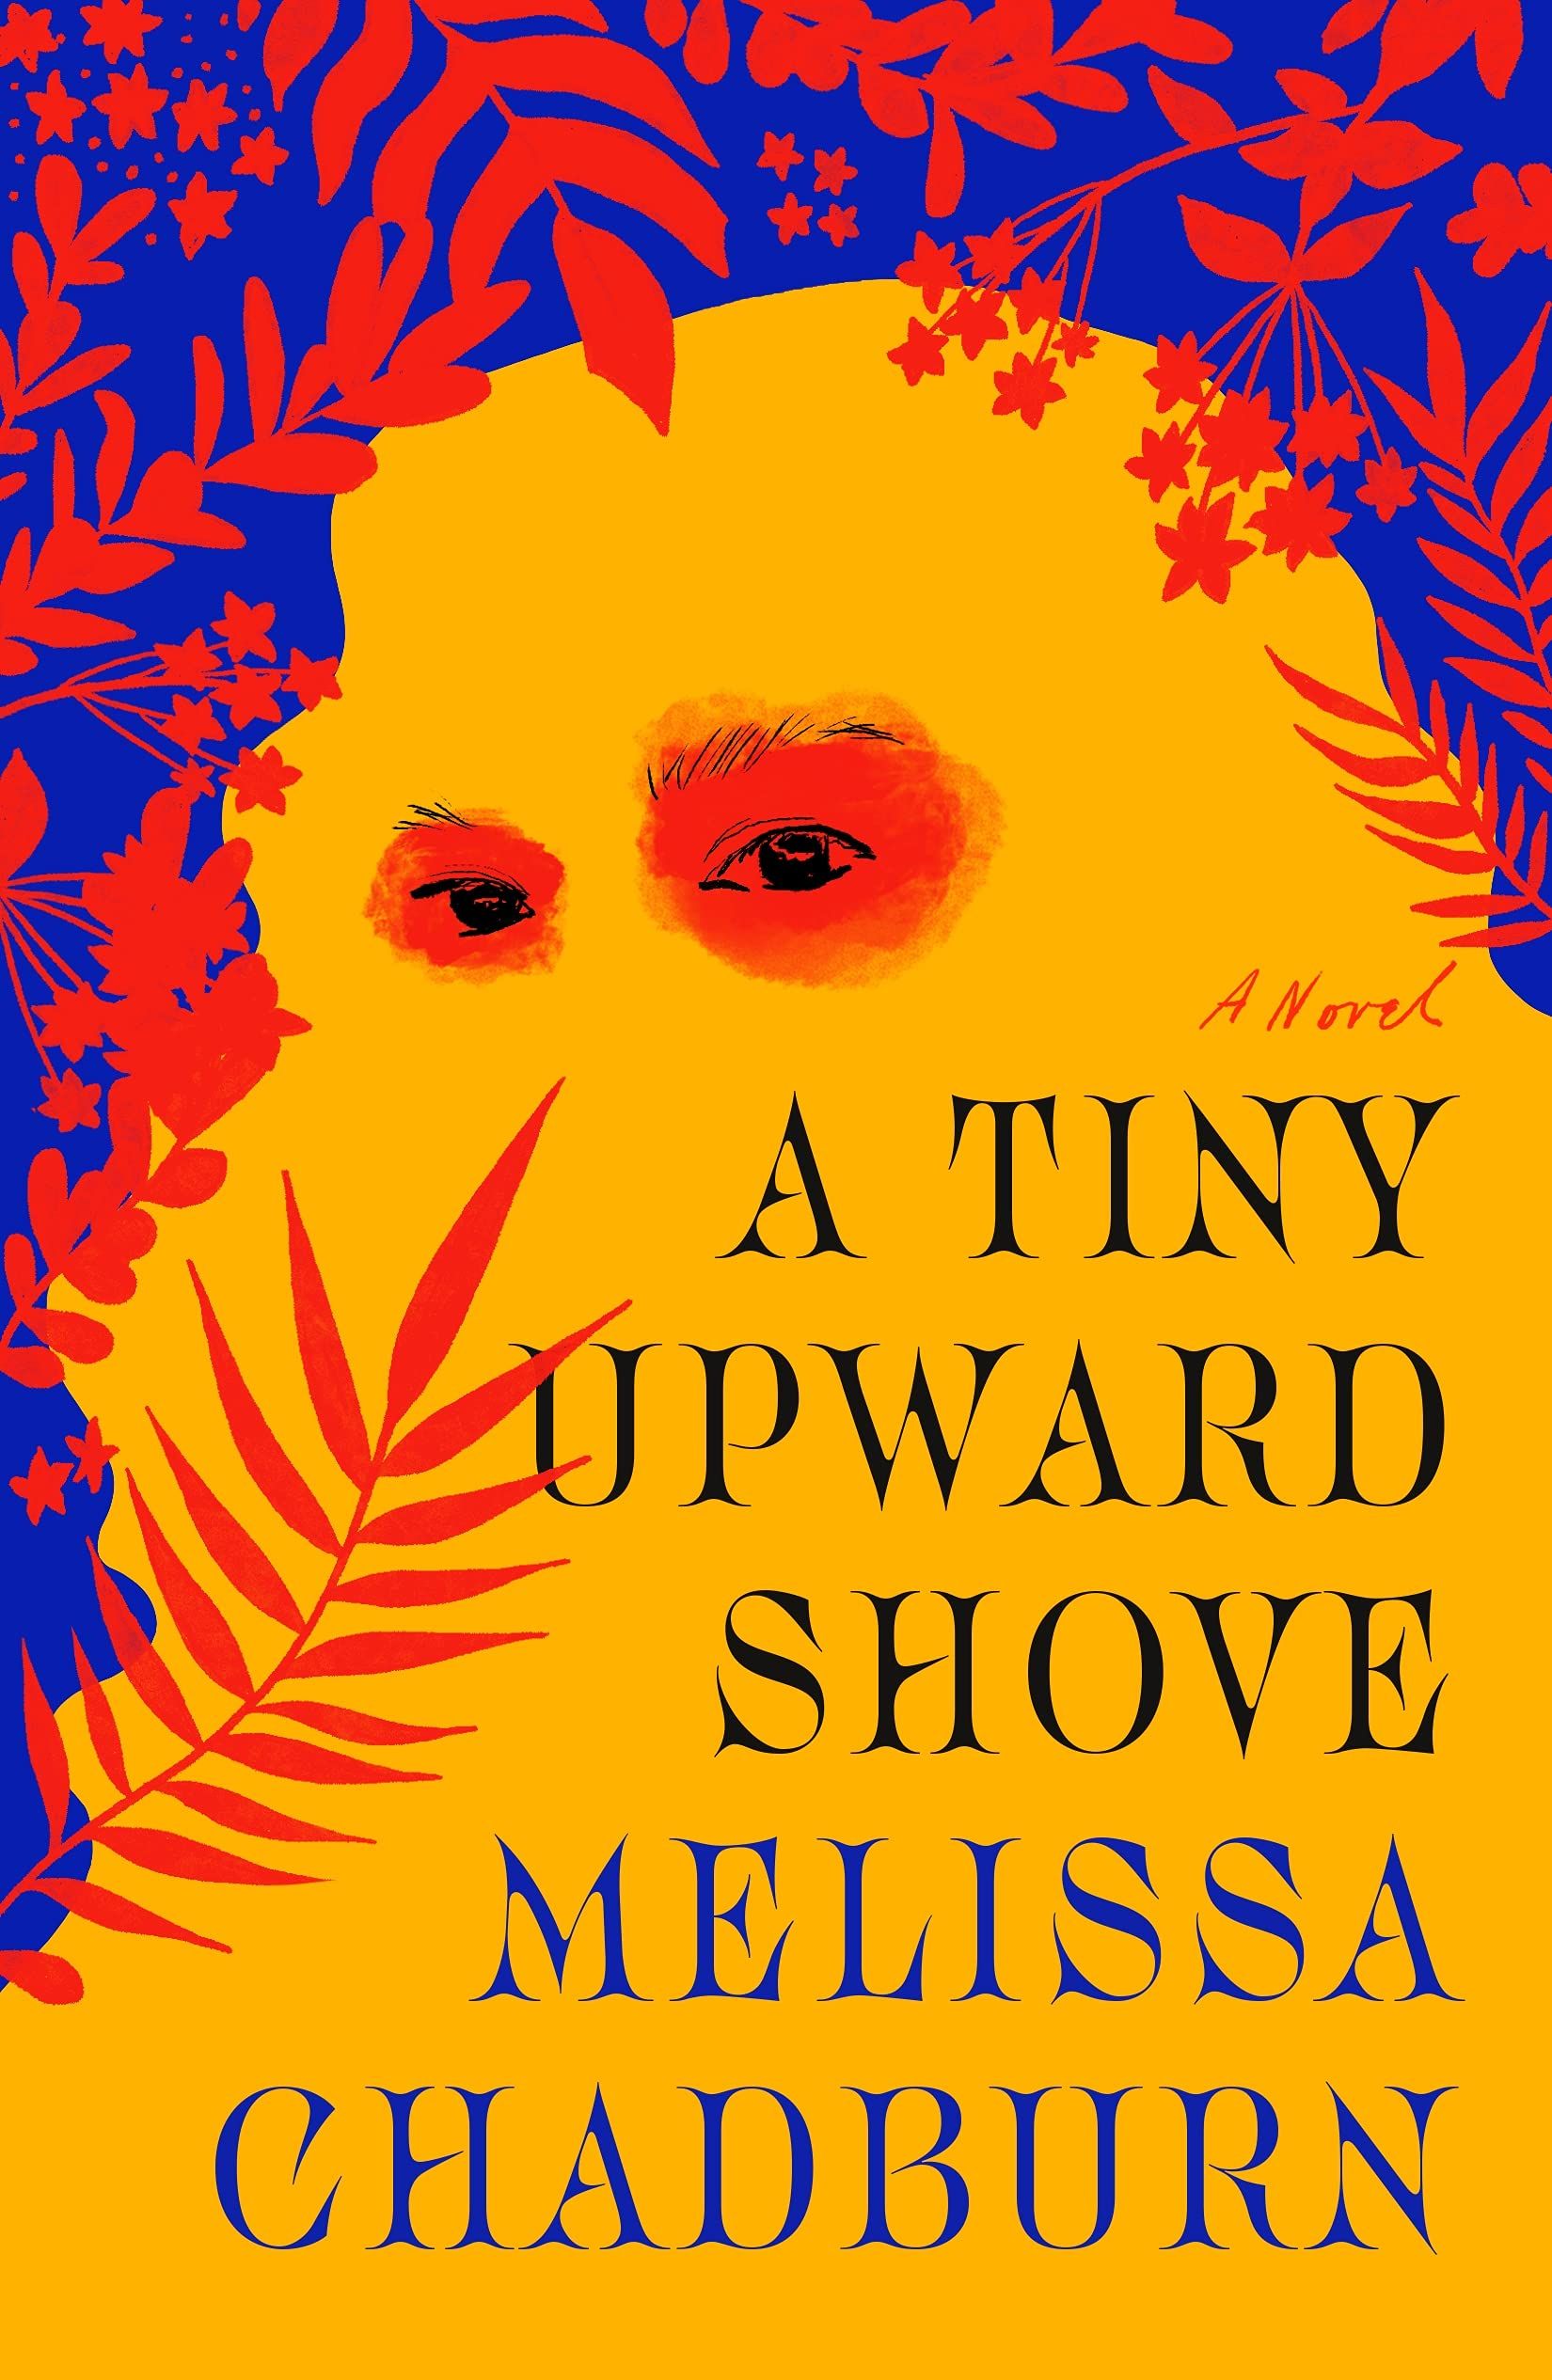 A Tiny Upward Shove by Melissa Chadburn cover 